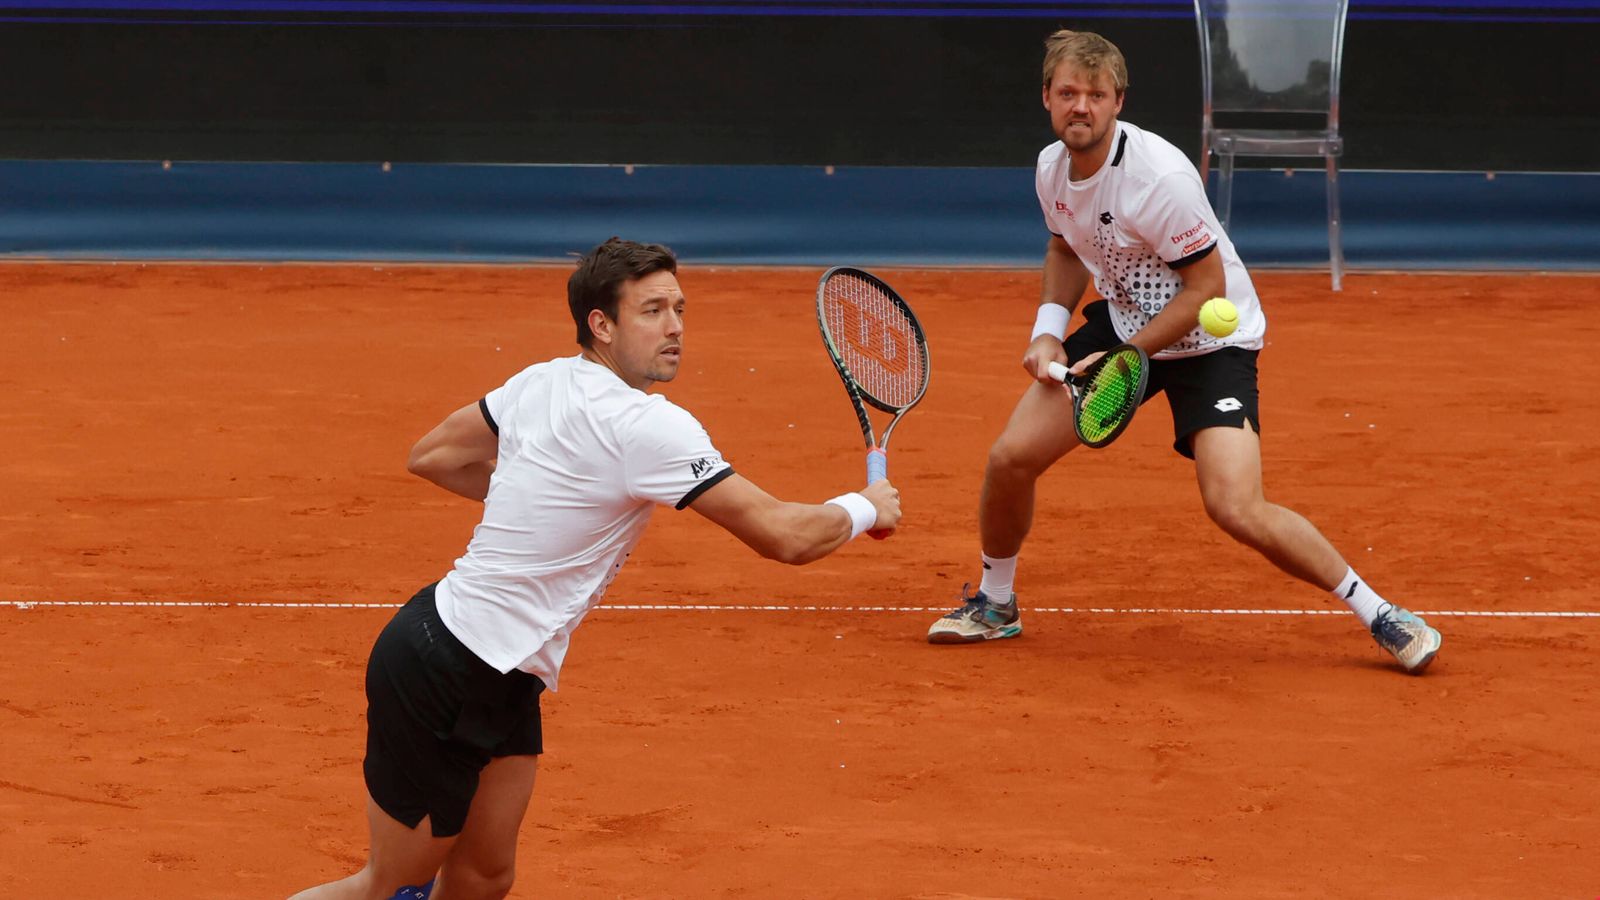 Tennis ATP-Turnier in München Krawietz/Mies im Finale Tennis News Sky Sport